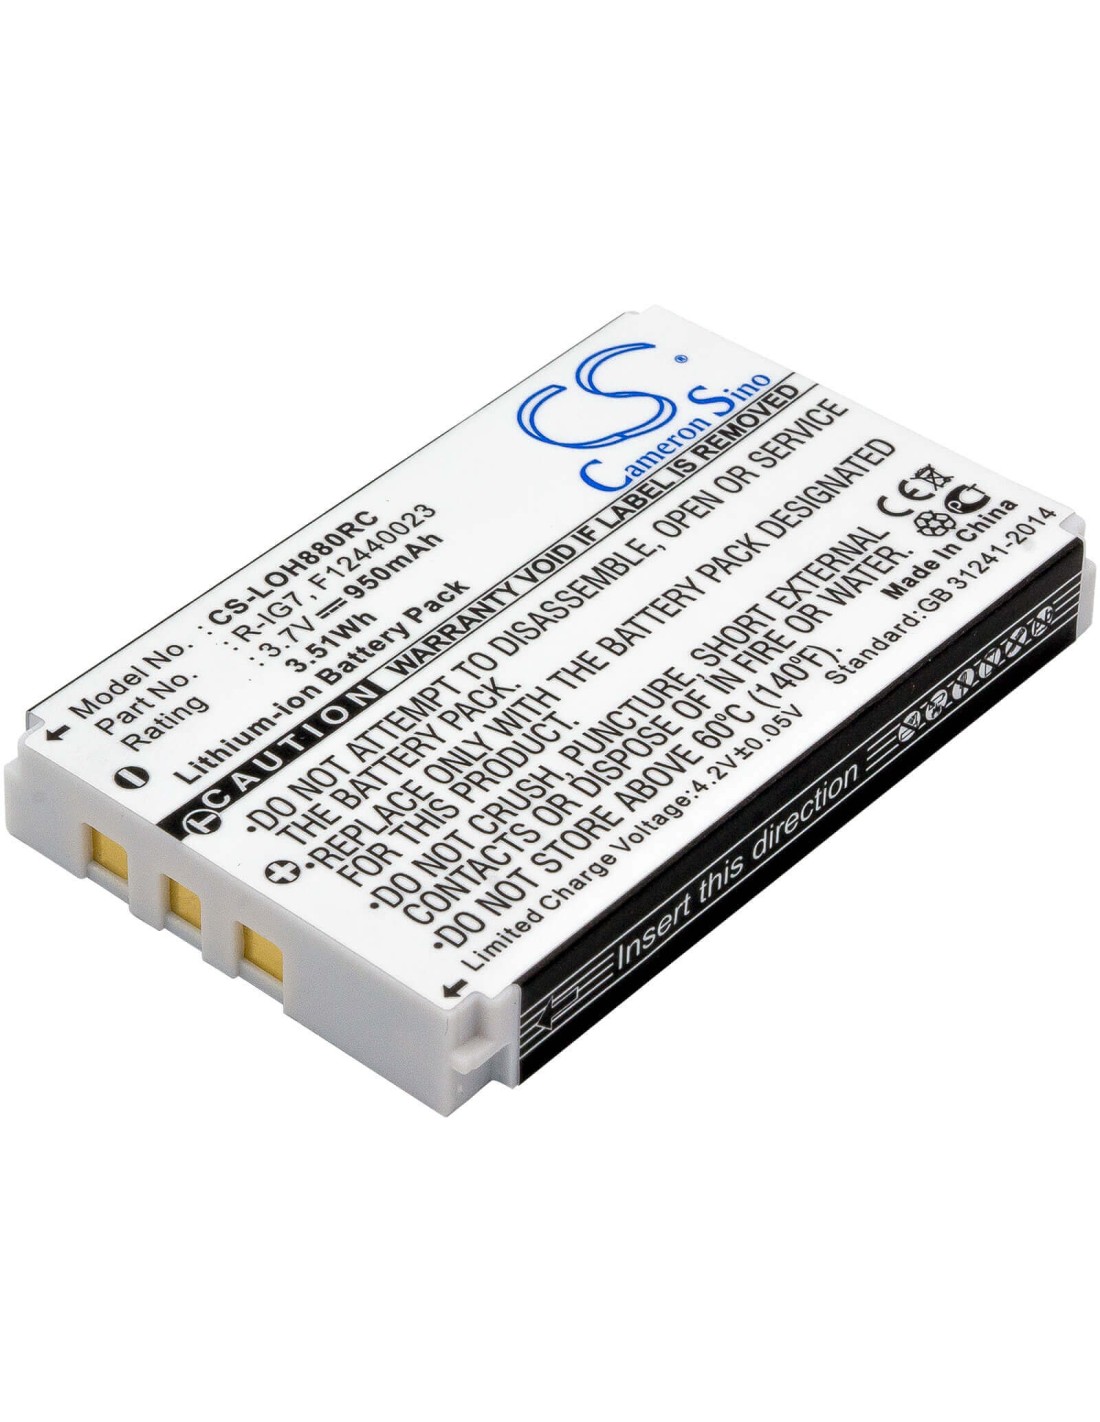 Battery for Logitech Harmony One, Harmony 880 3.7V, 950mAh - 3.52Wh